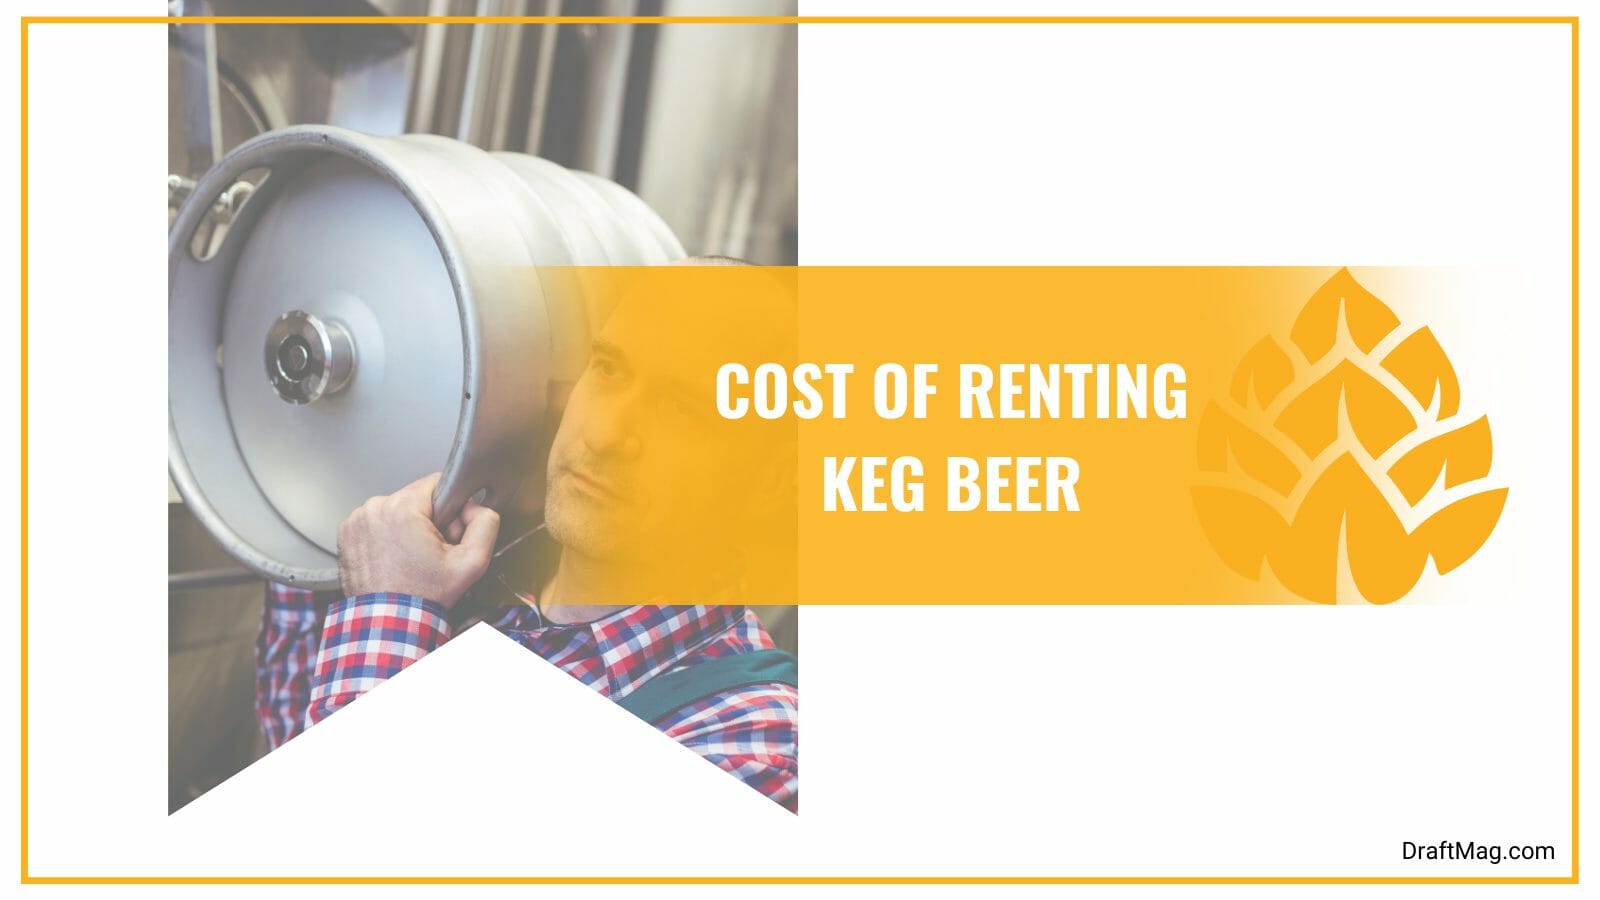 Renting a keg beer